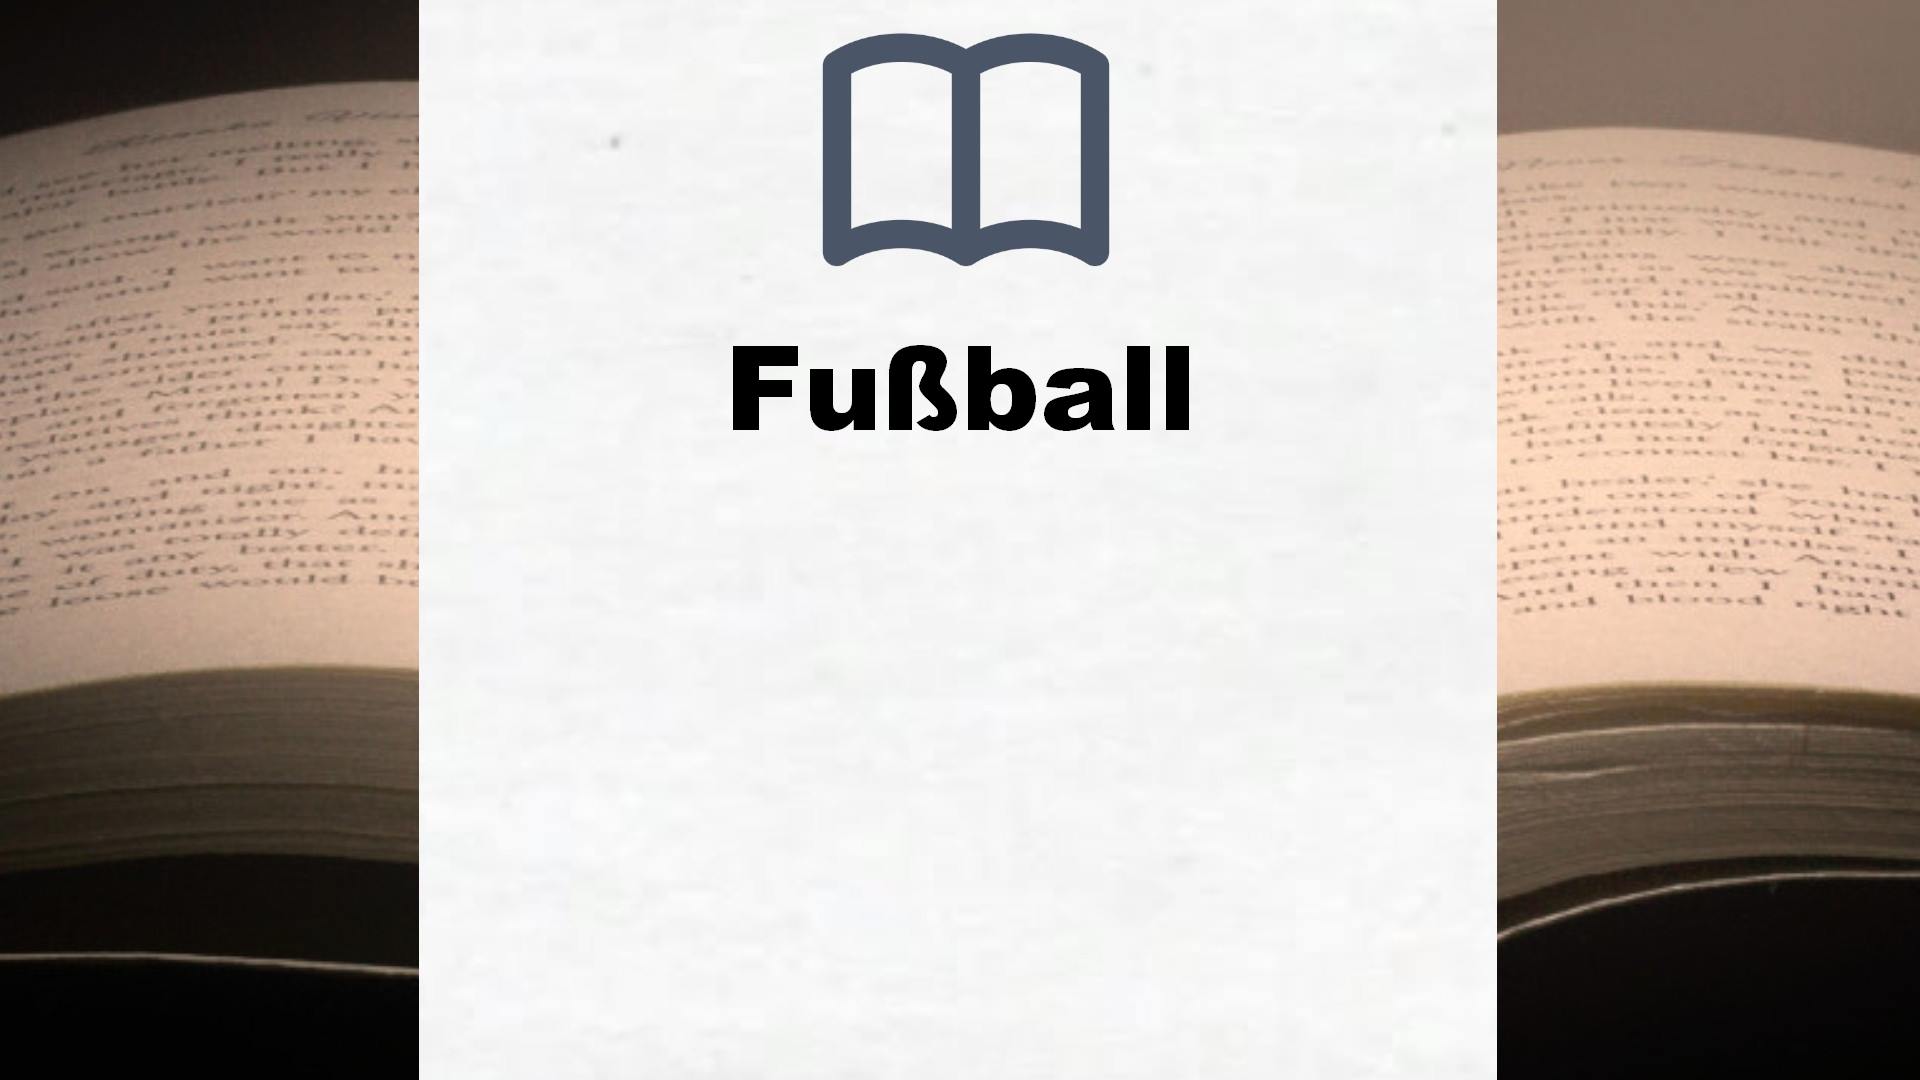 Bücher über Fußball